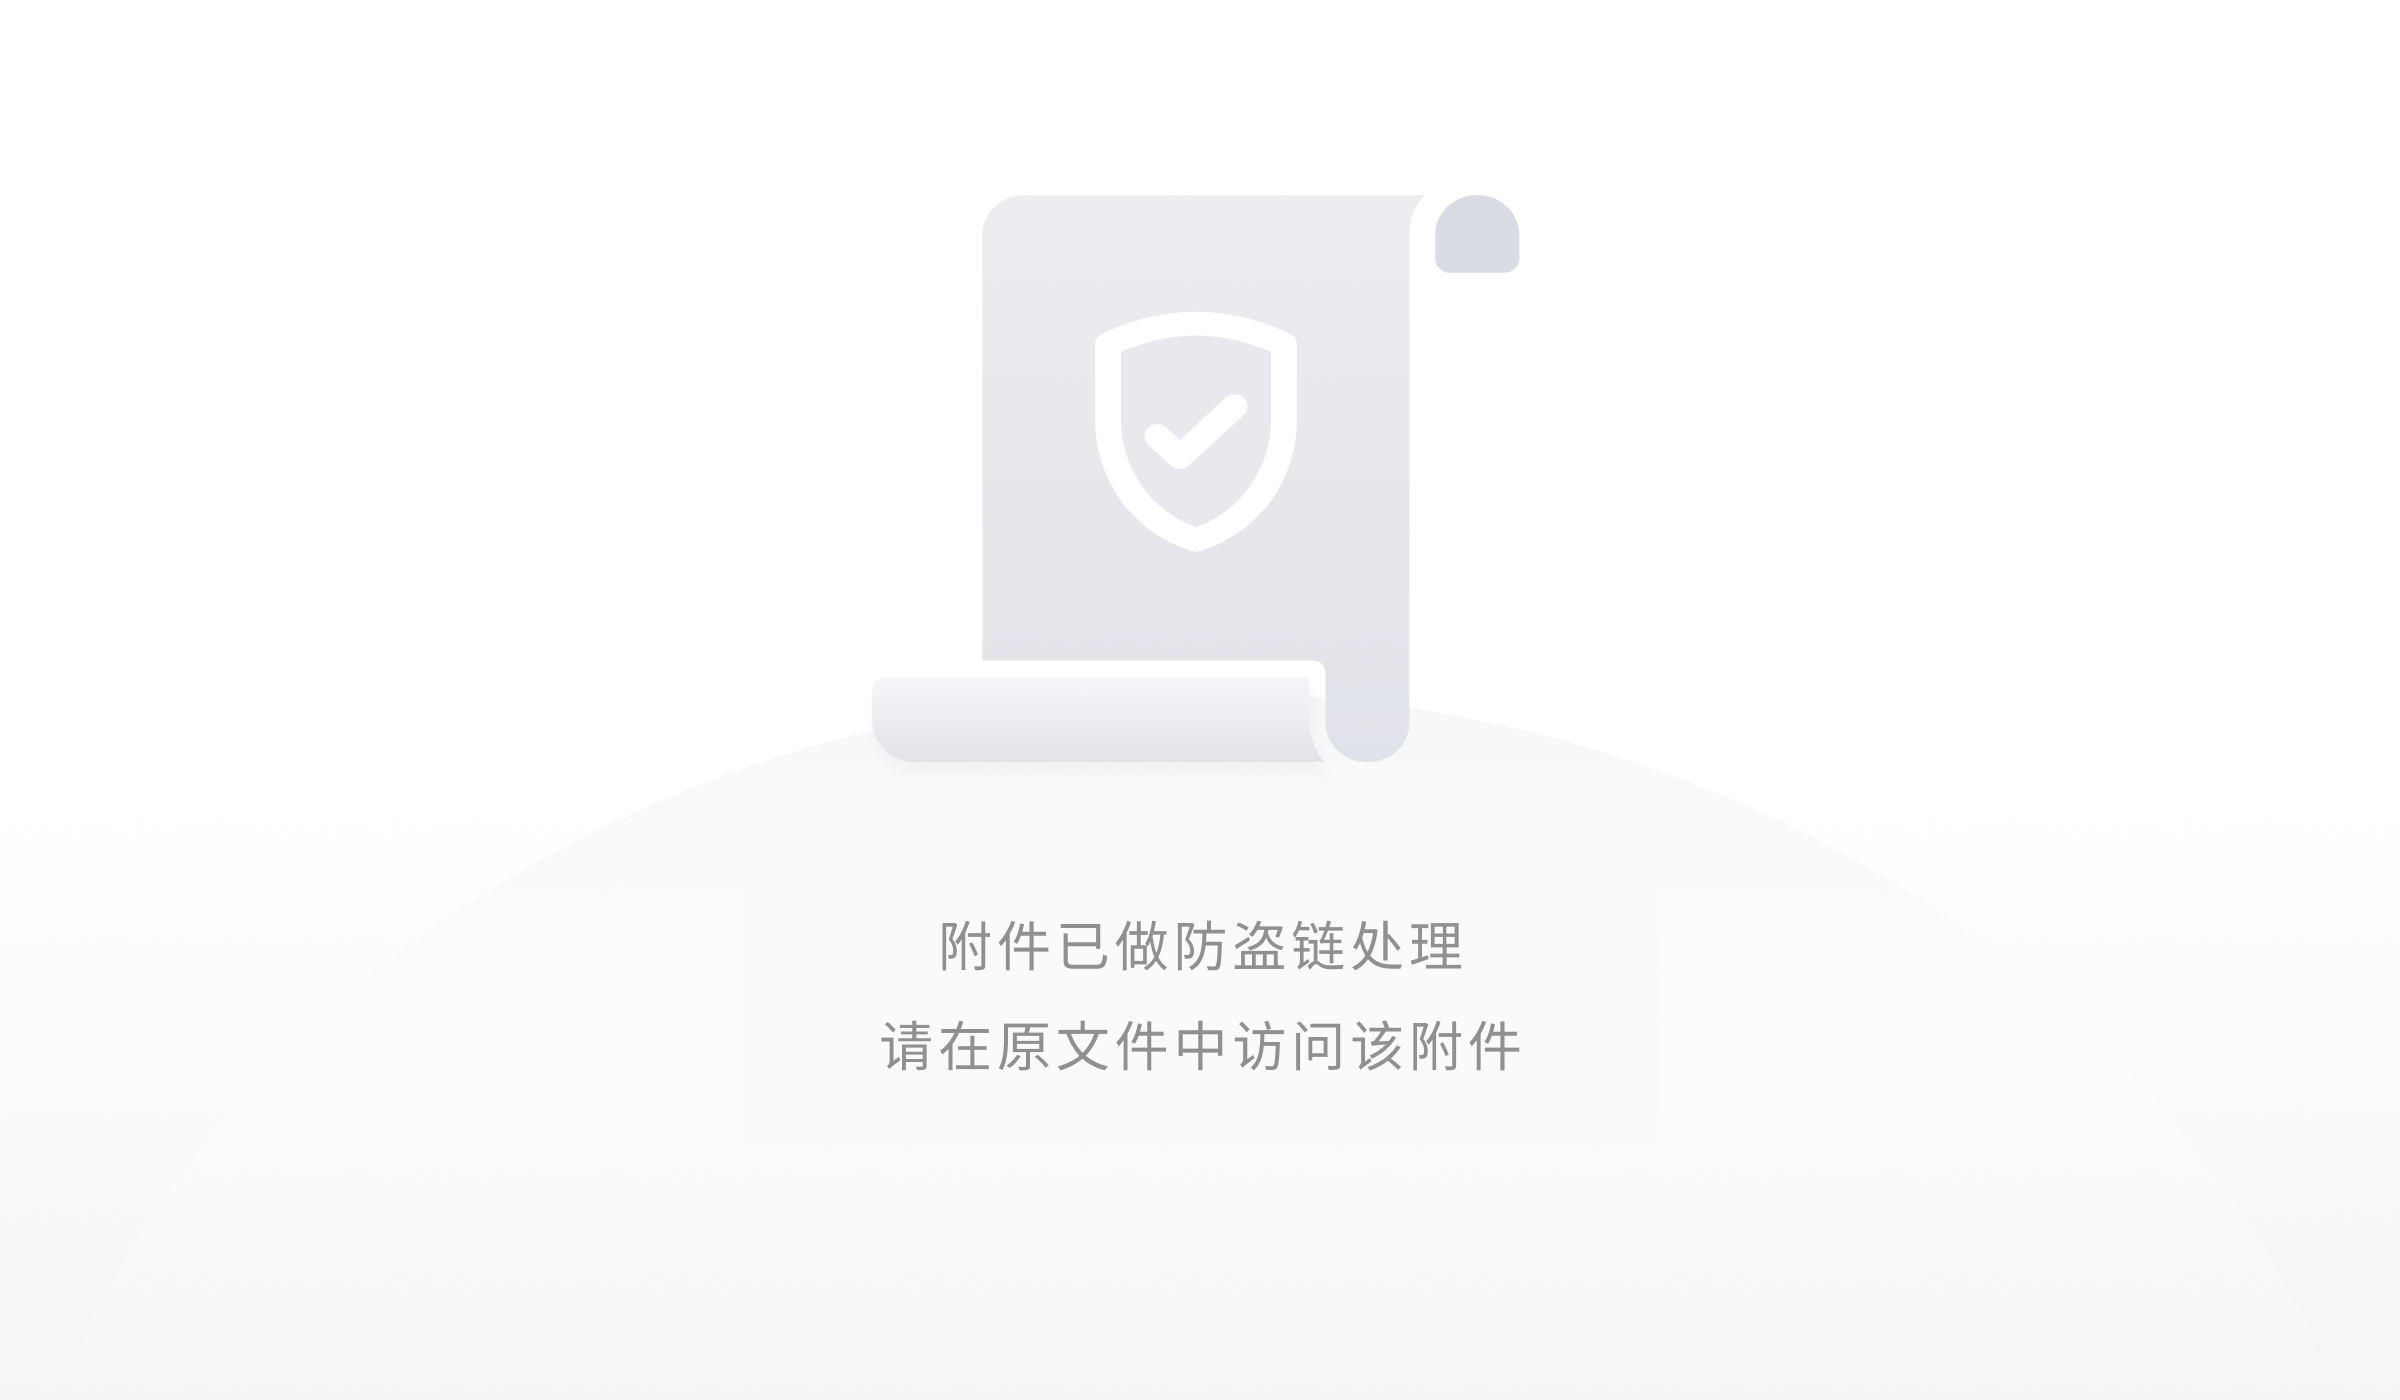 以太坊官网更新上海升级提款信息，有哪些要点值得注意？